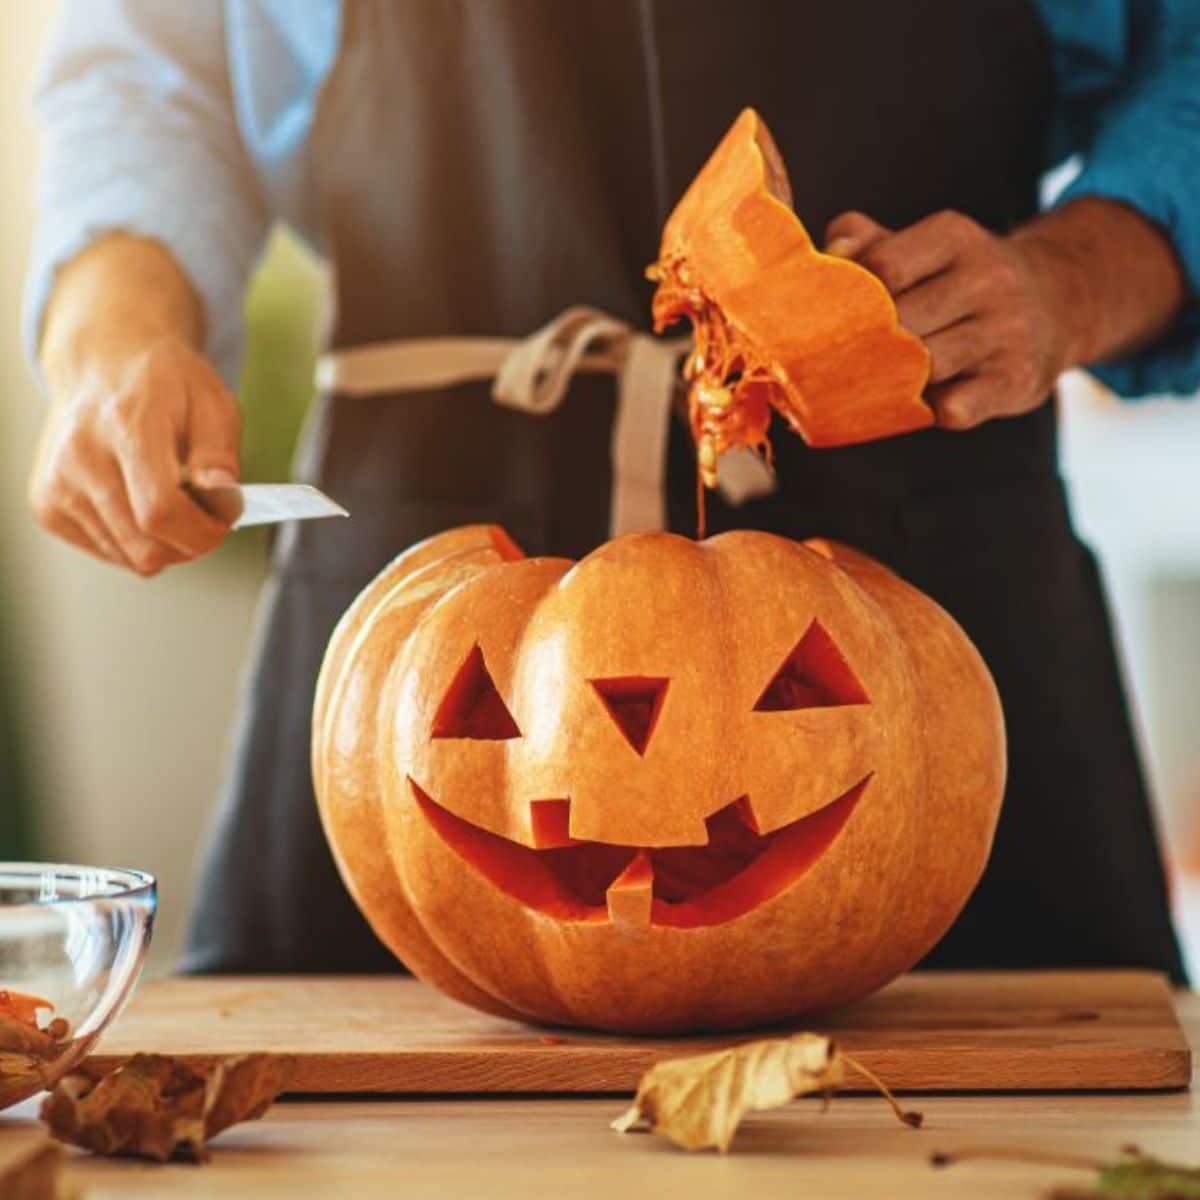 A man cutting a pumpkin for Halloween.